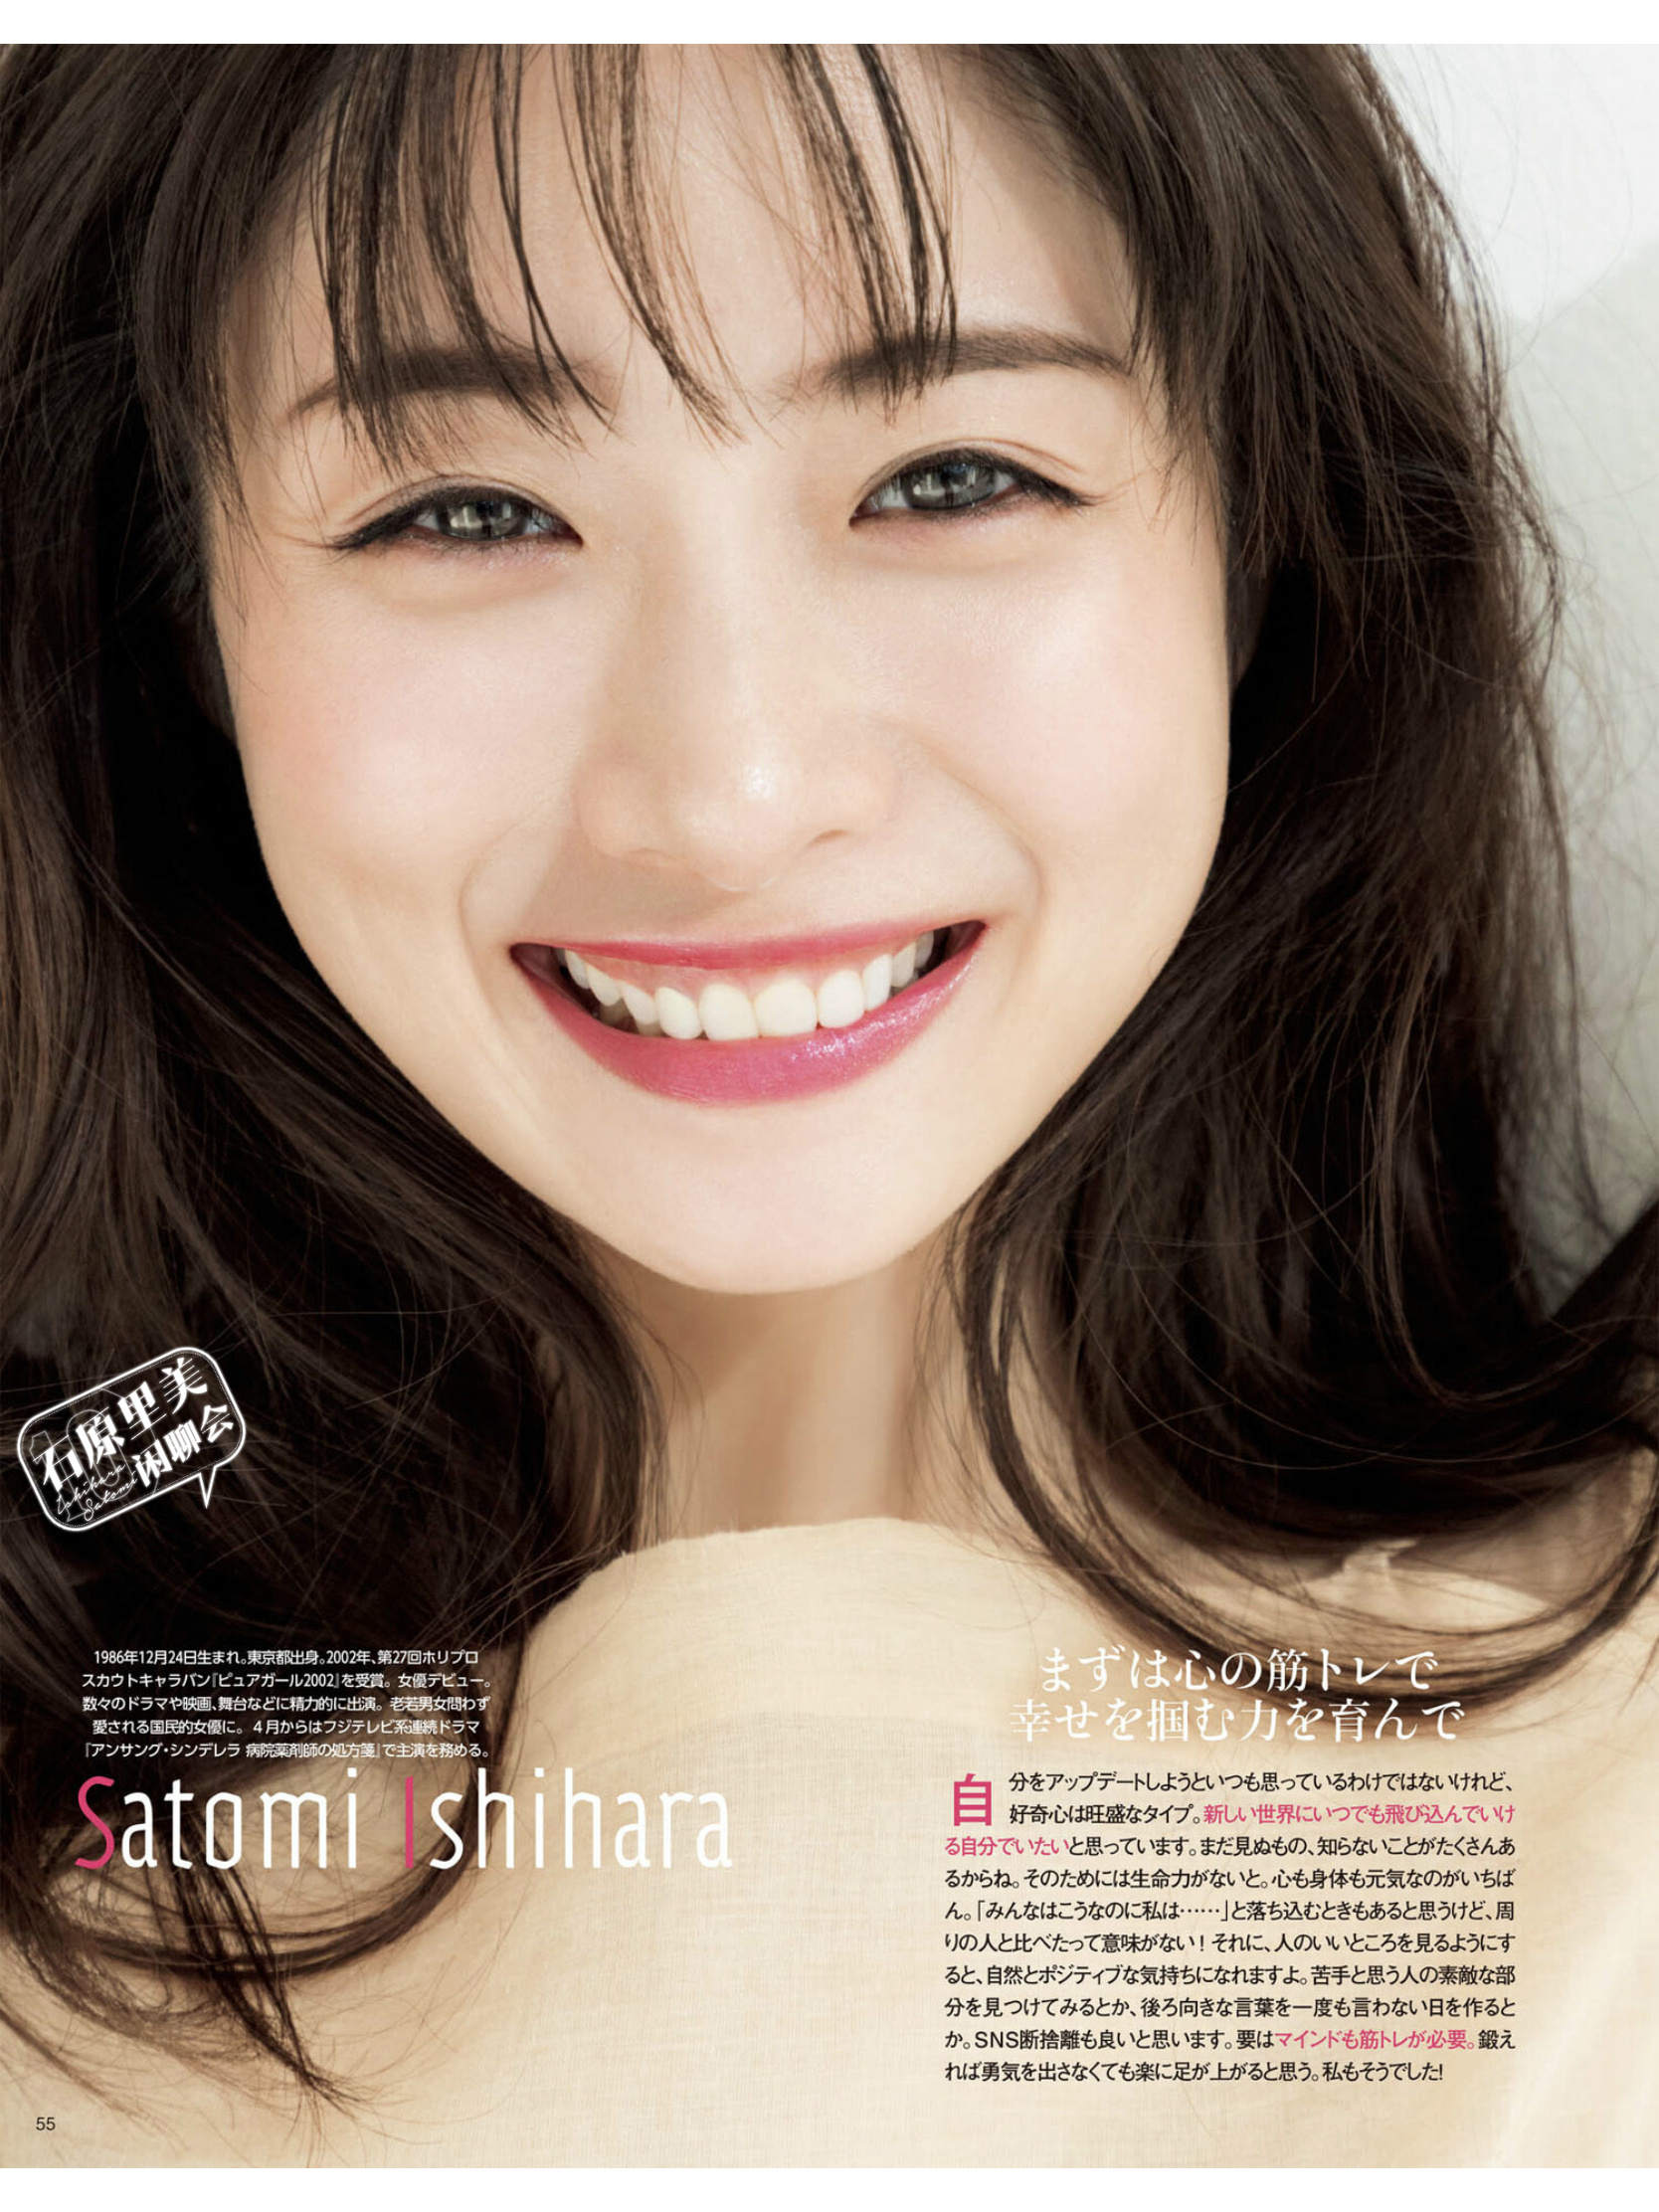 石原里美,1986年12月24日出生于日本东京都,日本女演员,主持人